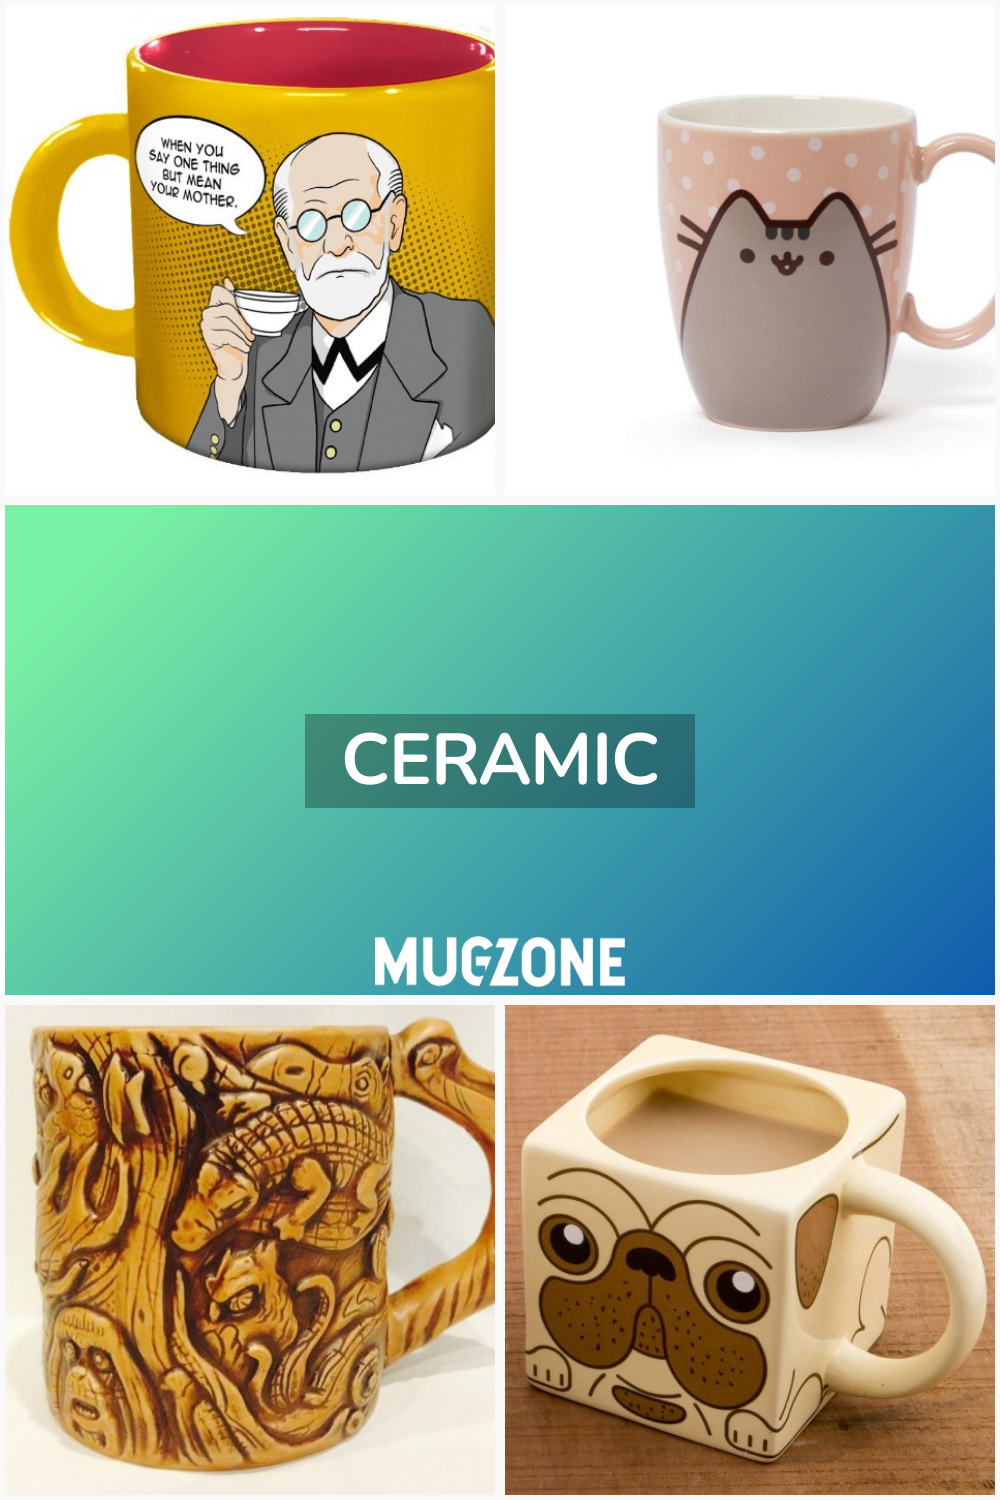 Ceramic // Mug Zone